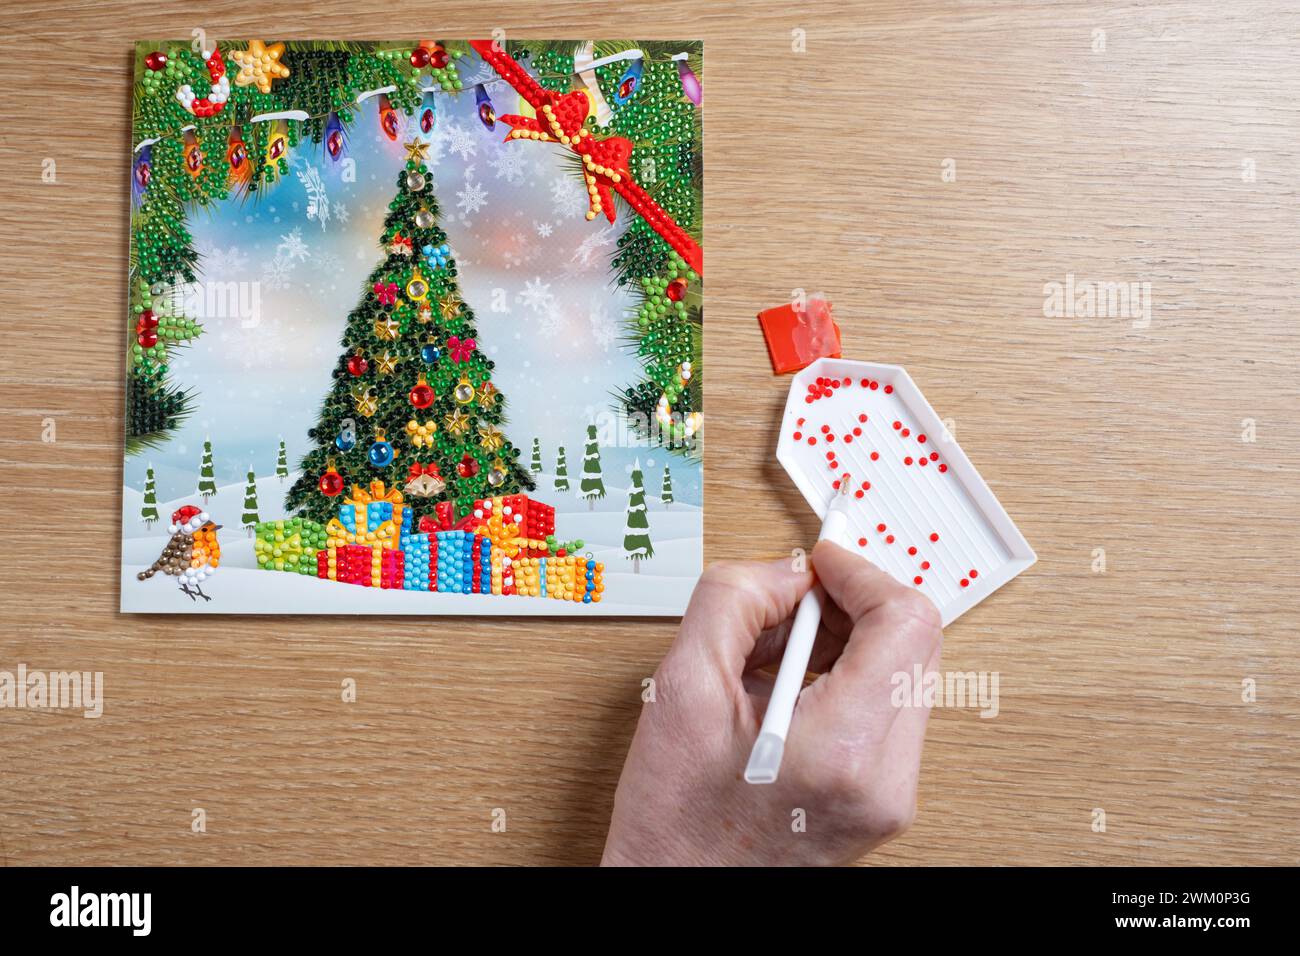 Une femme utilisant un stylo magique pour fixer de petits cristaux ou des diamants à une carte de Noël DIY. Les cristaux colorés sont collés sur une carte adhésive Banque D'Images